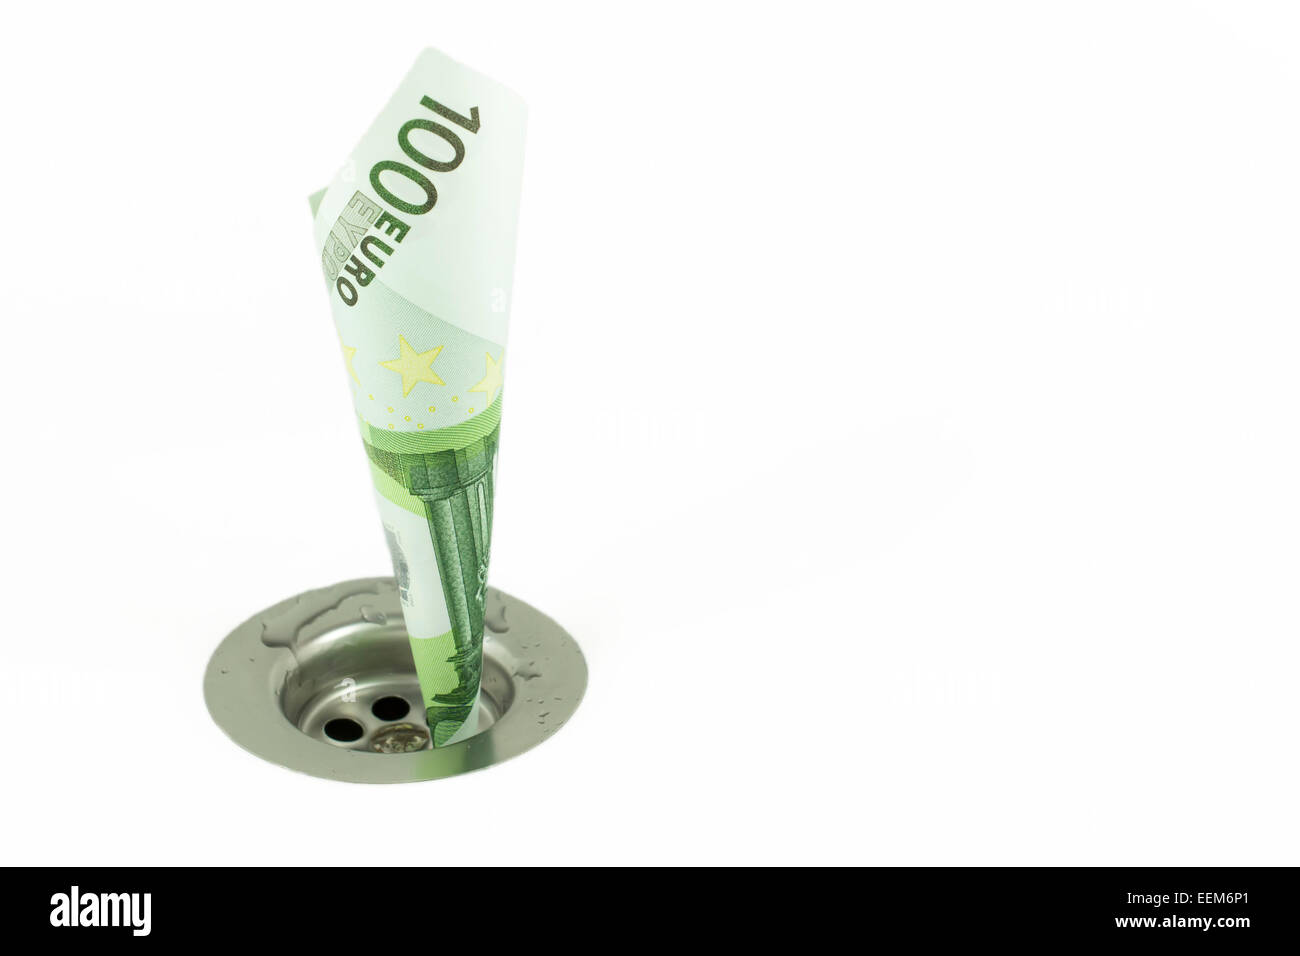 Hundert Euro Schein verdreht und eingefügt durch ein Loch von einem Waschbecken Abfluss, Konzept für Geld und finanzielle Probleme Stockfoto